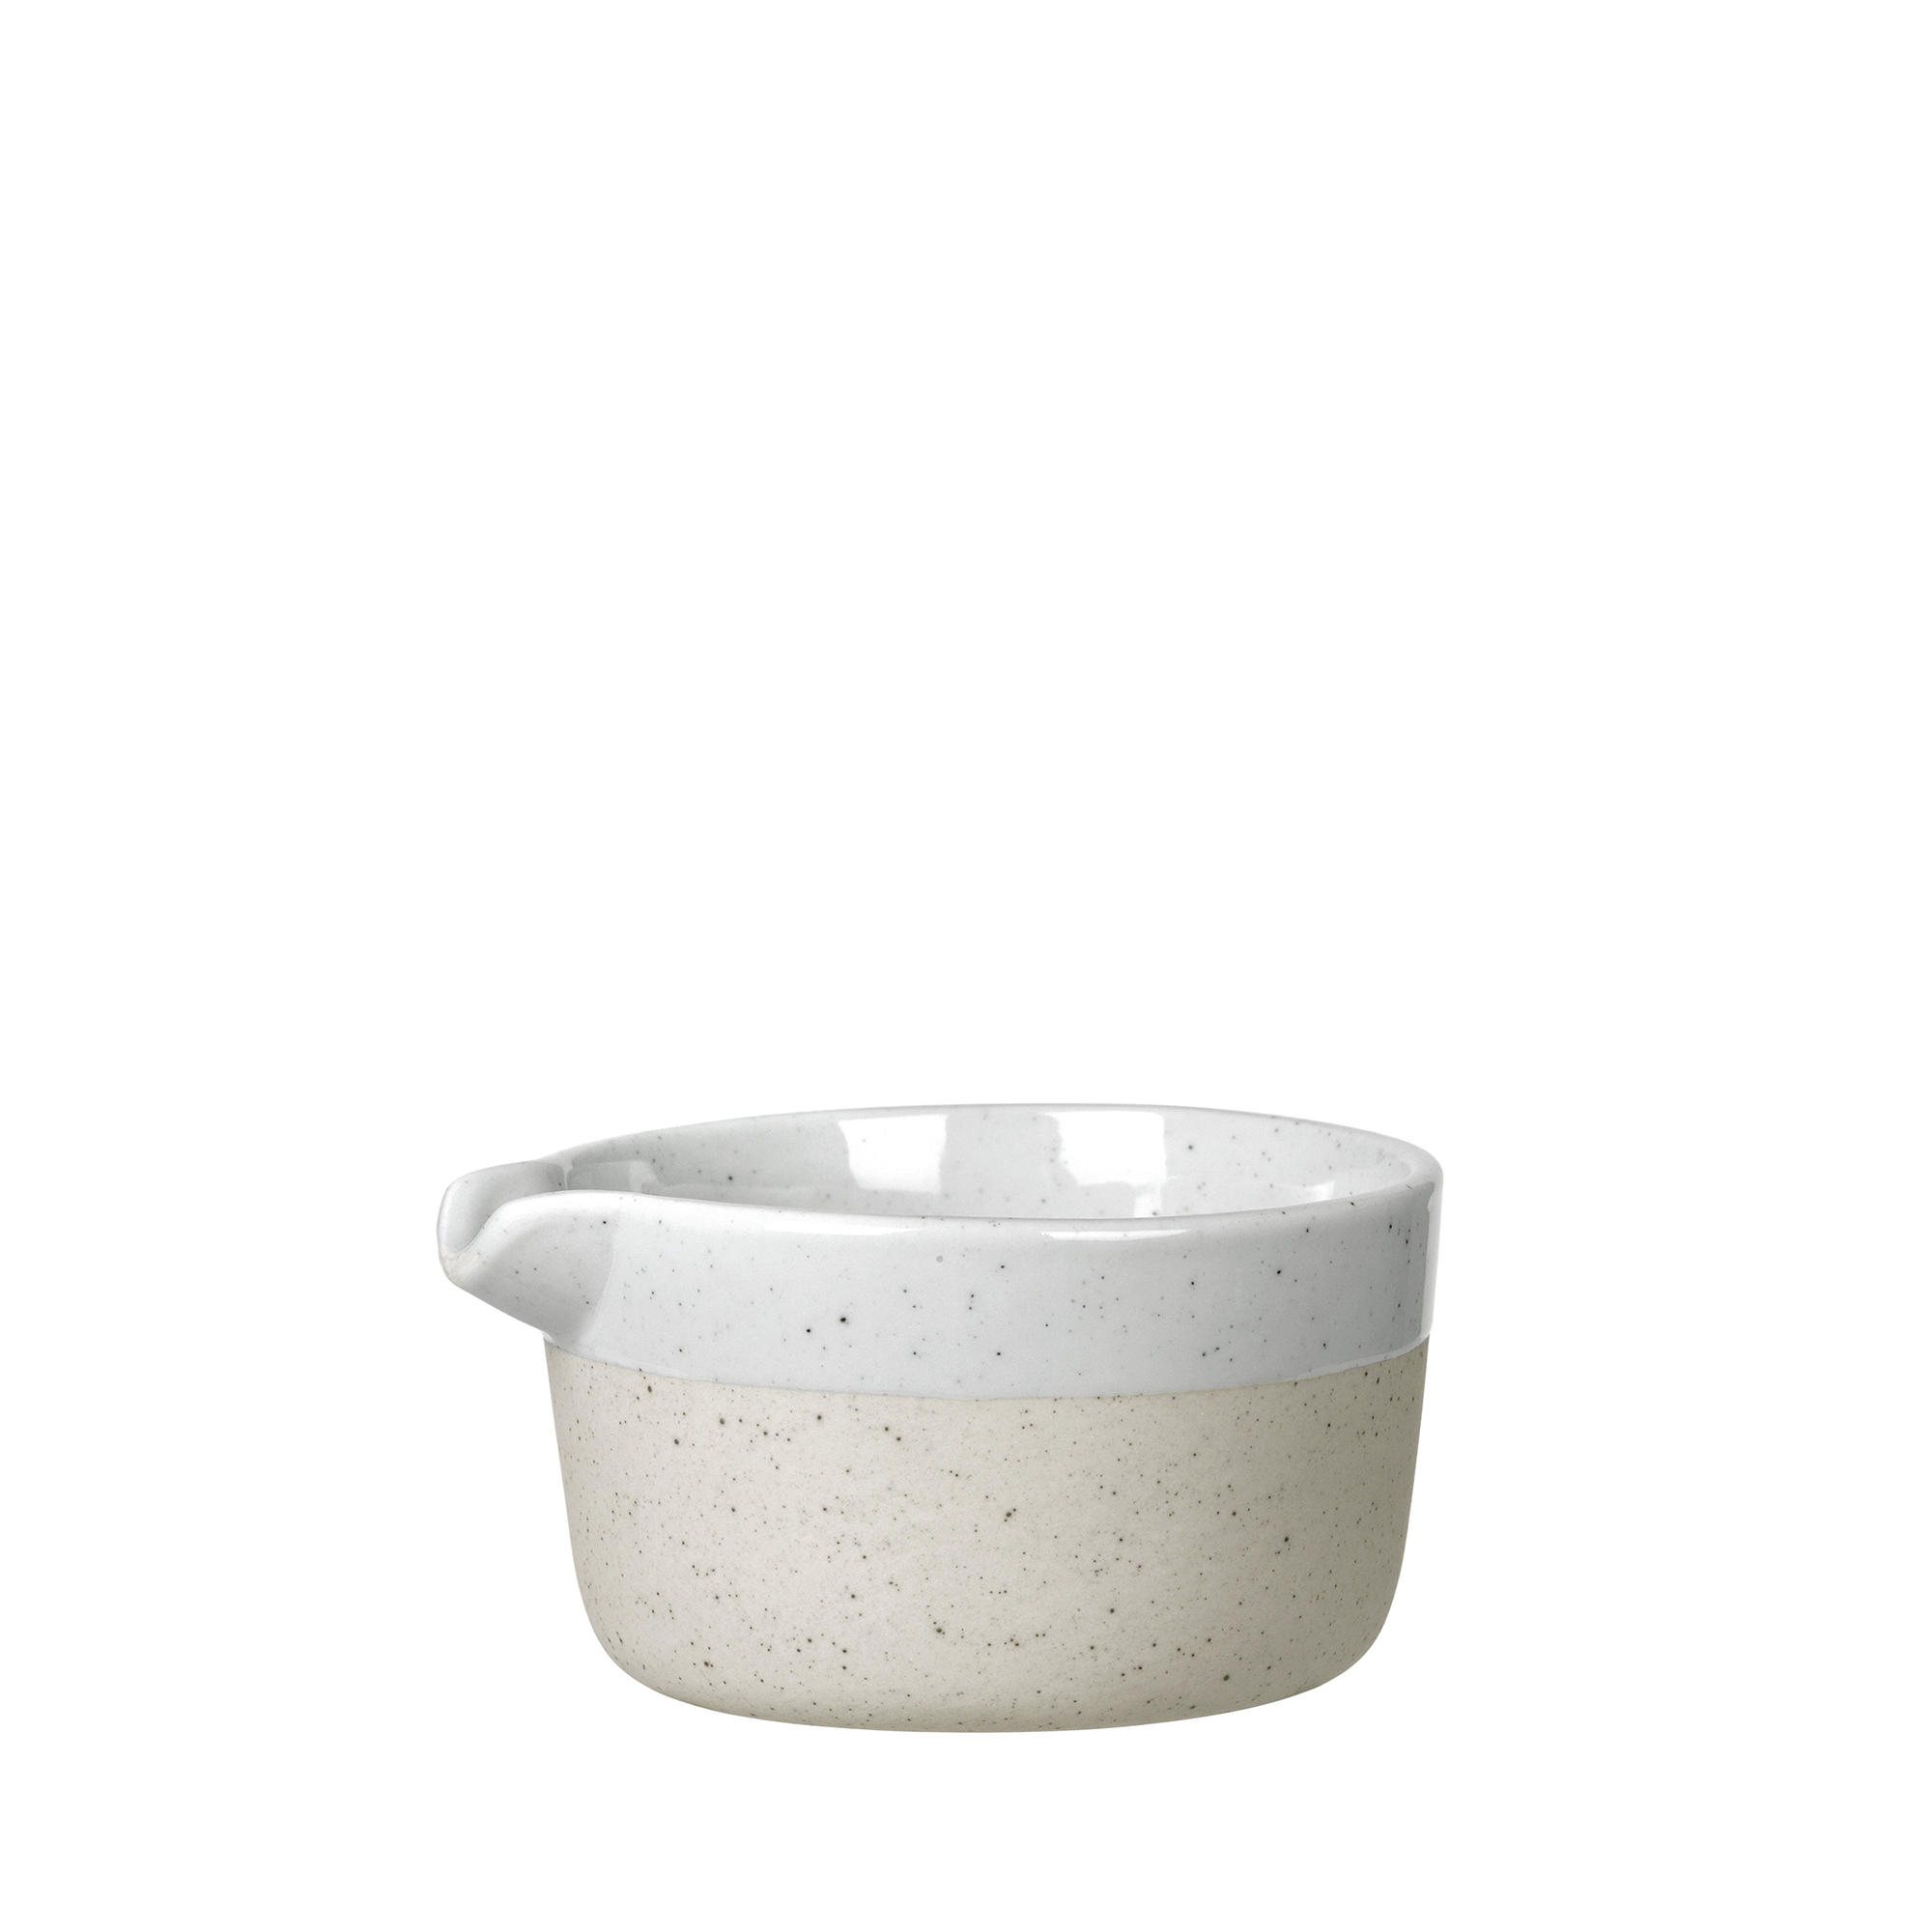 MILCHKÄNNCHEN - Beige/Grau, Design, Keramik (8,5/5cm) - Blomus